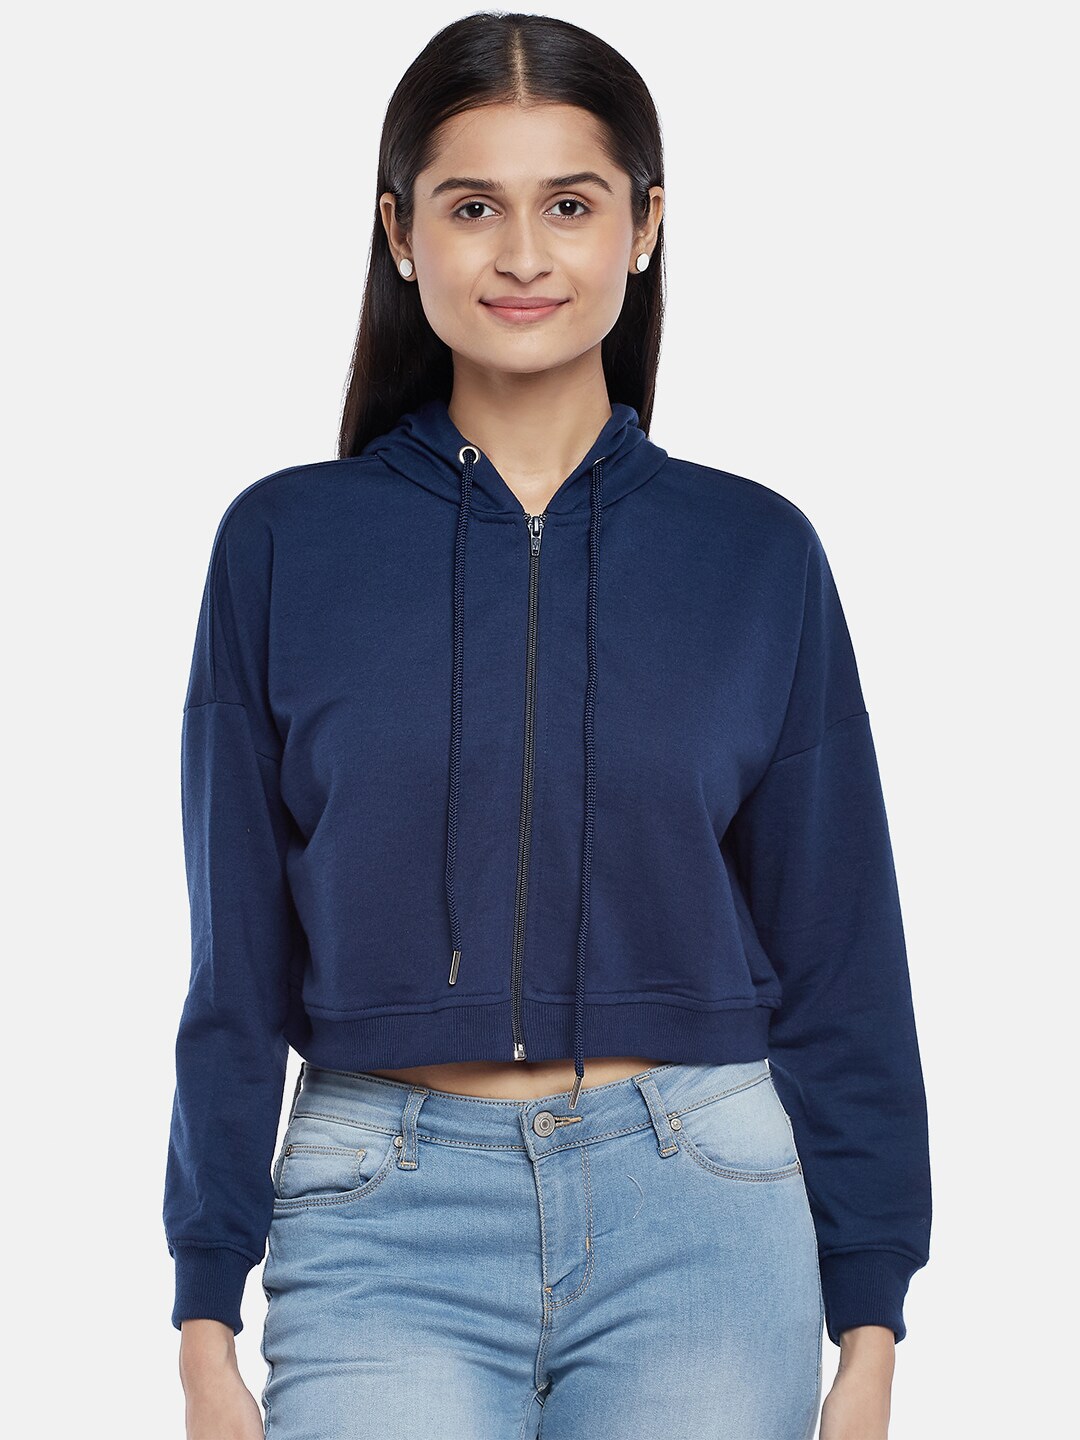 People Women Navy Blue Hooded Sweatshirt Price in India